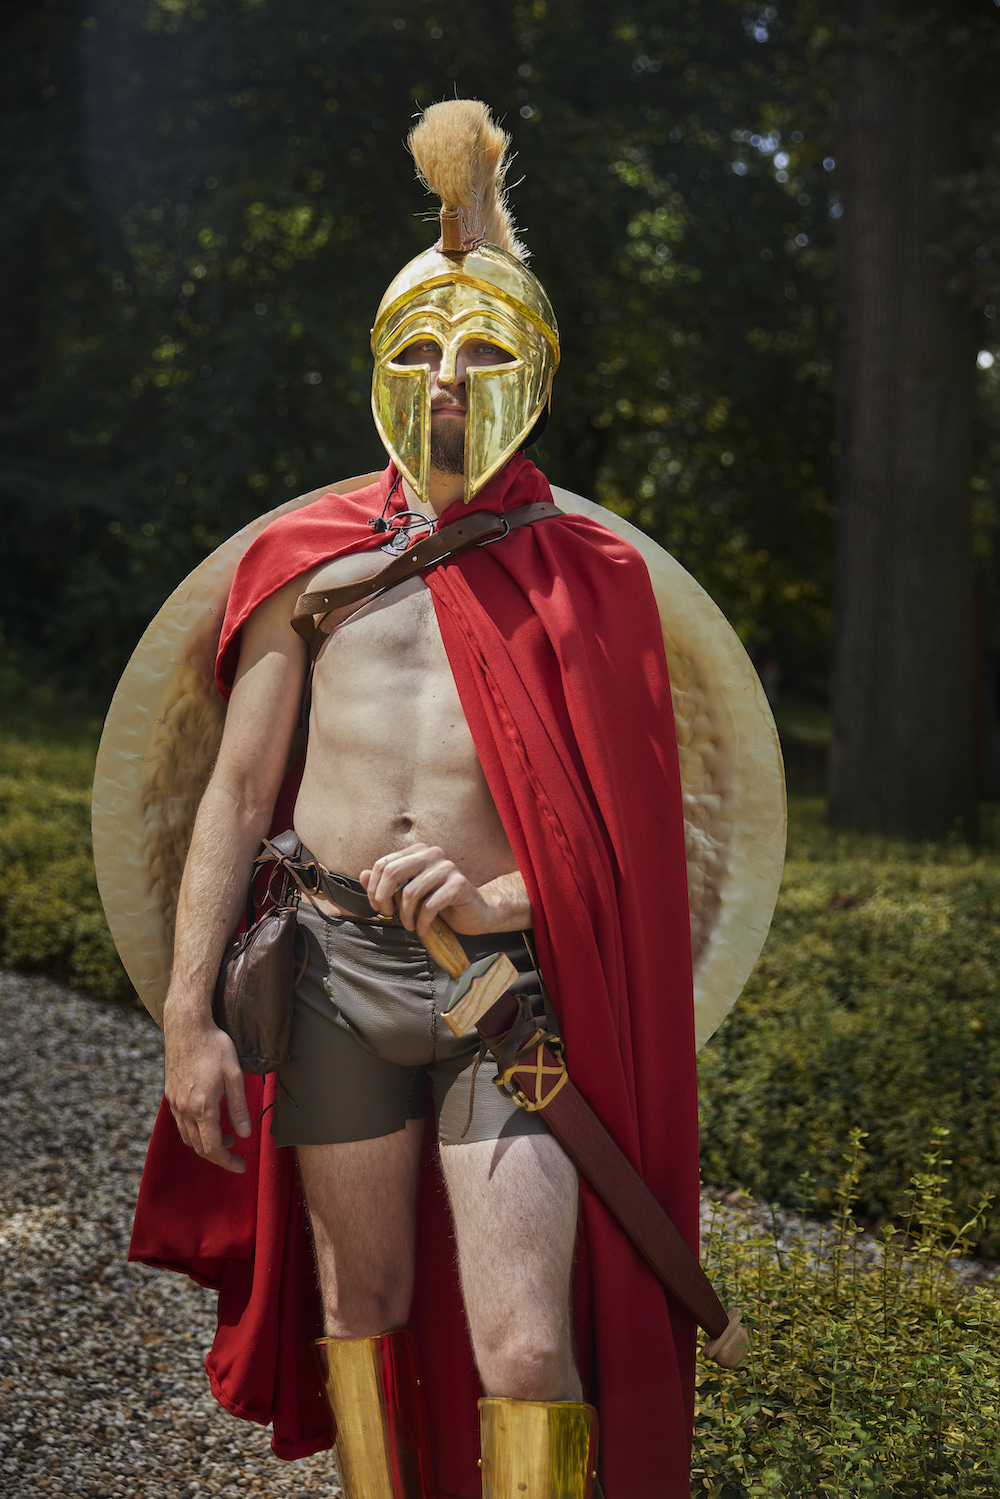 Ein Mann in einem Spartaner-Outfit mit Helm und Schild auf dem Rücken